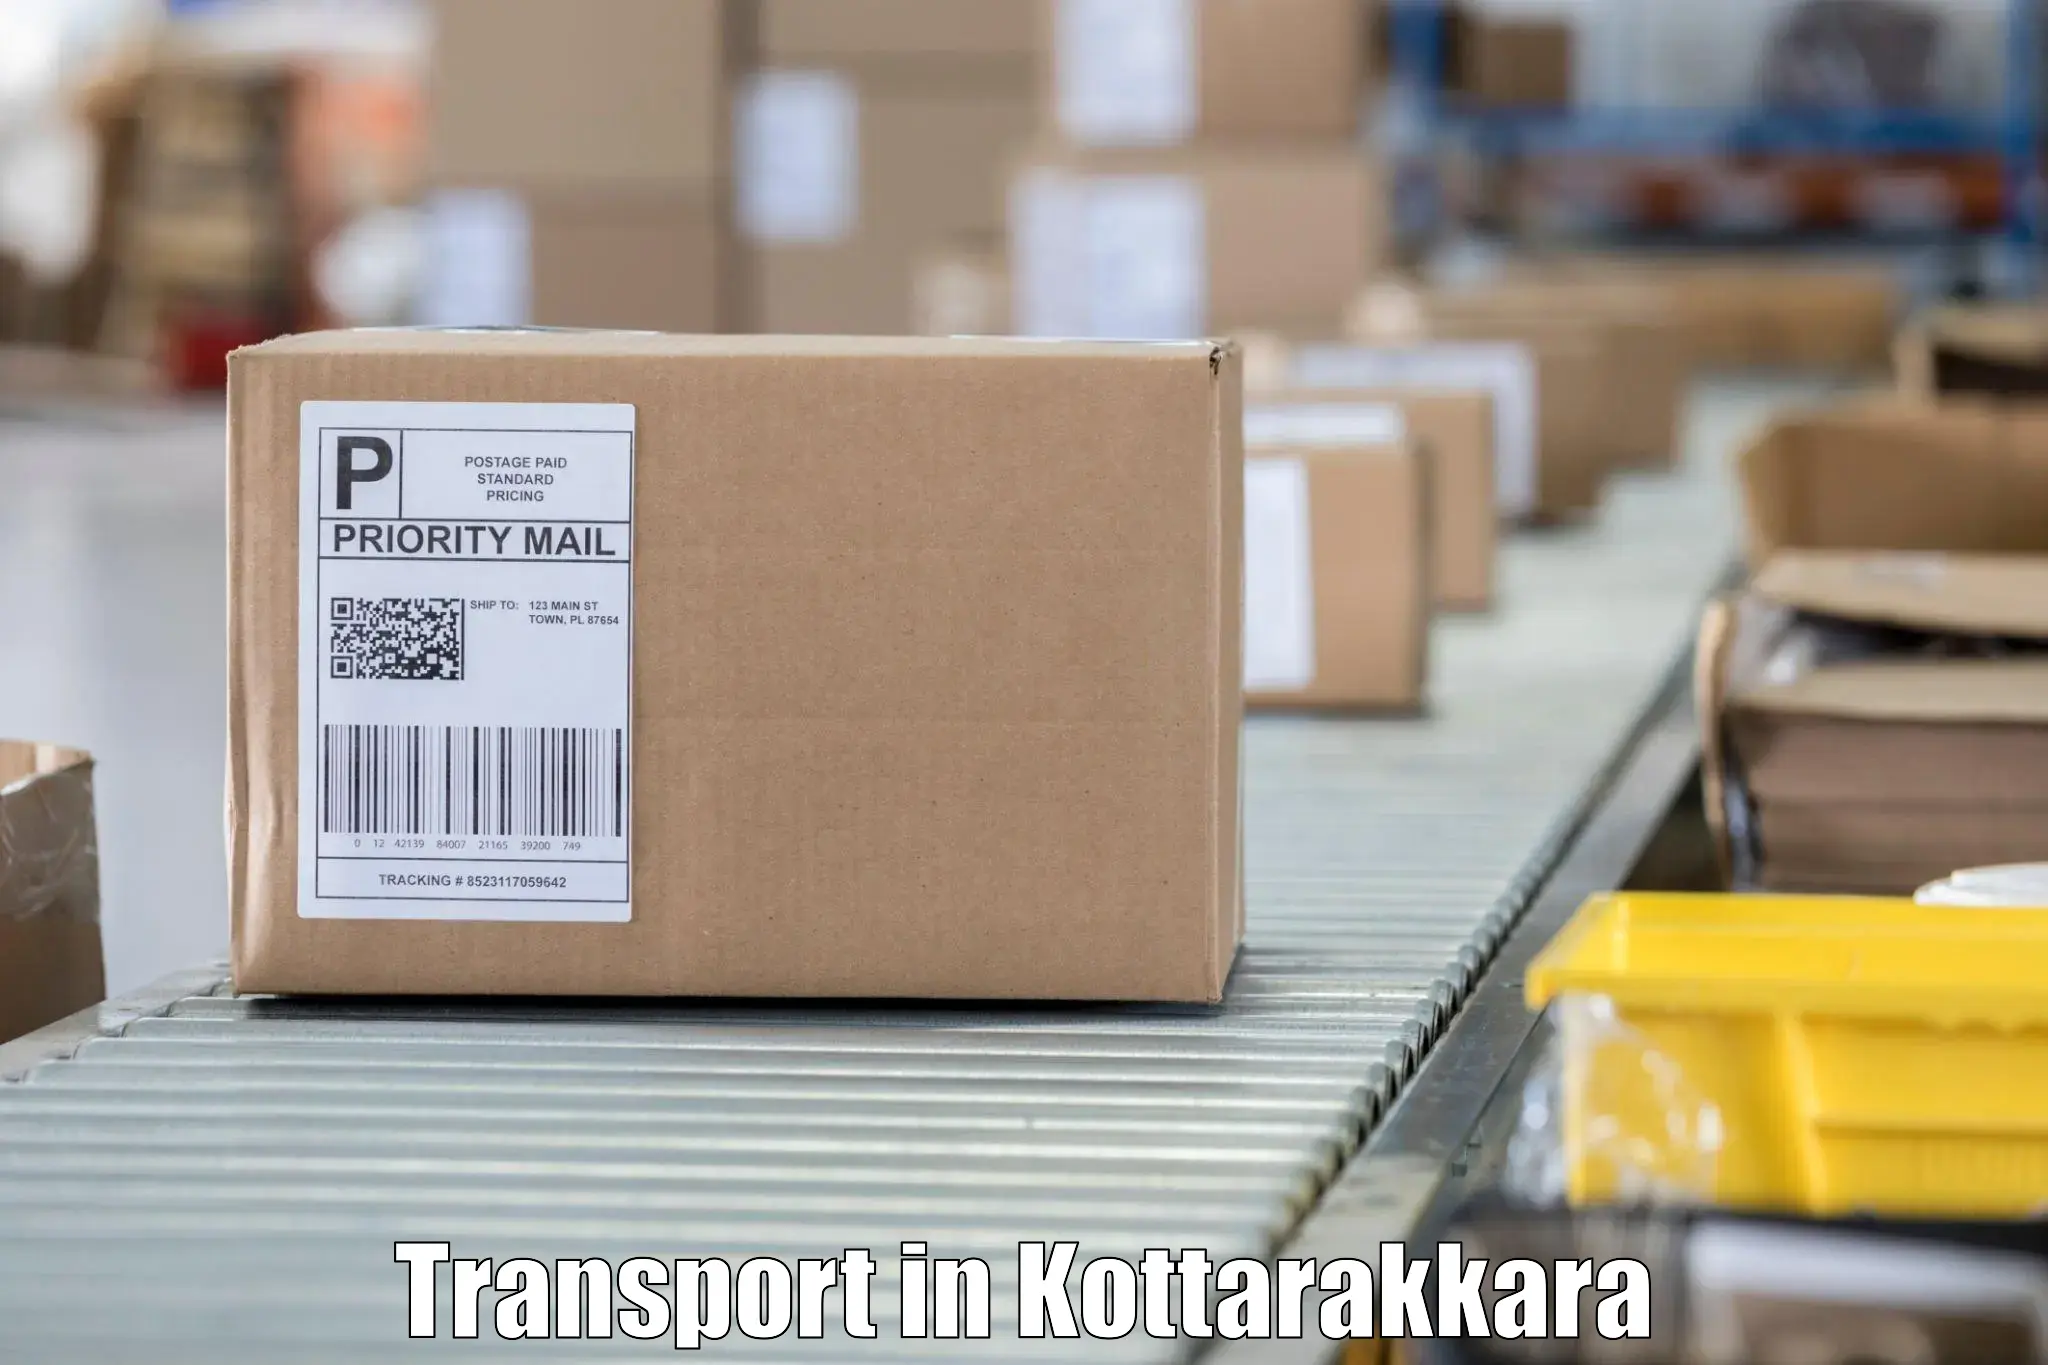 Online transport in Kottarakkara